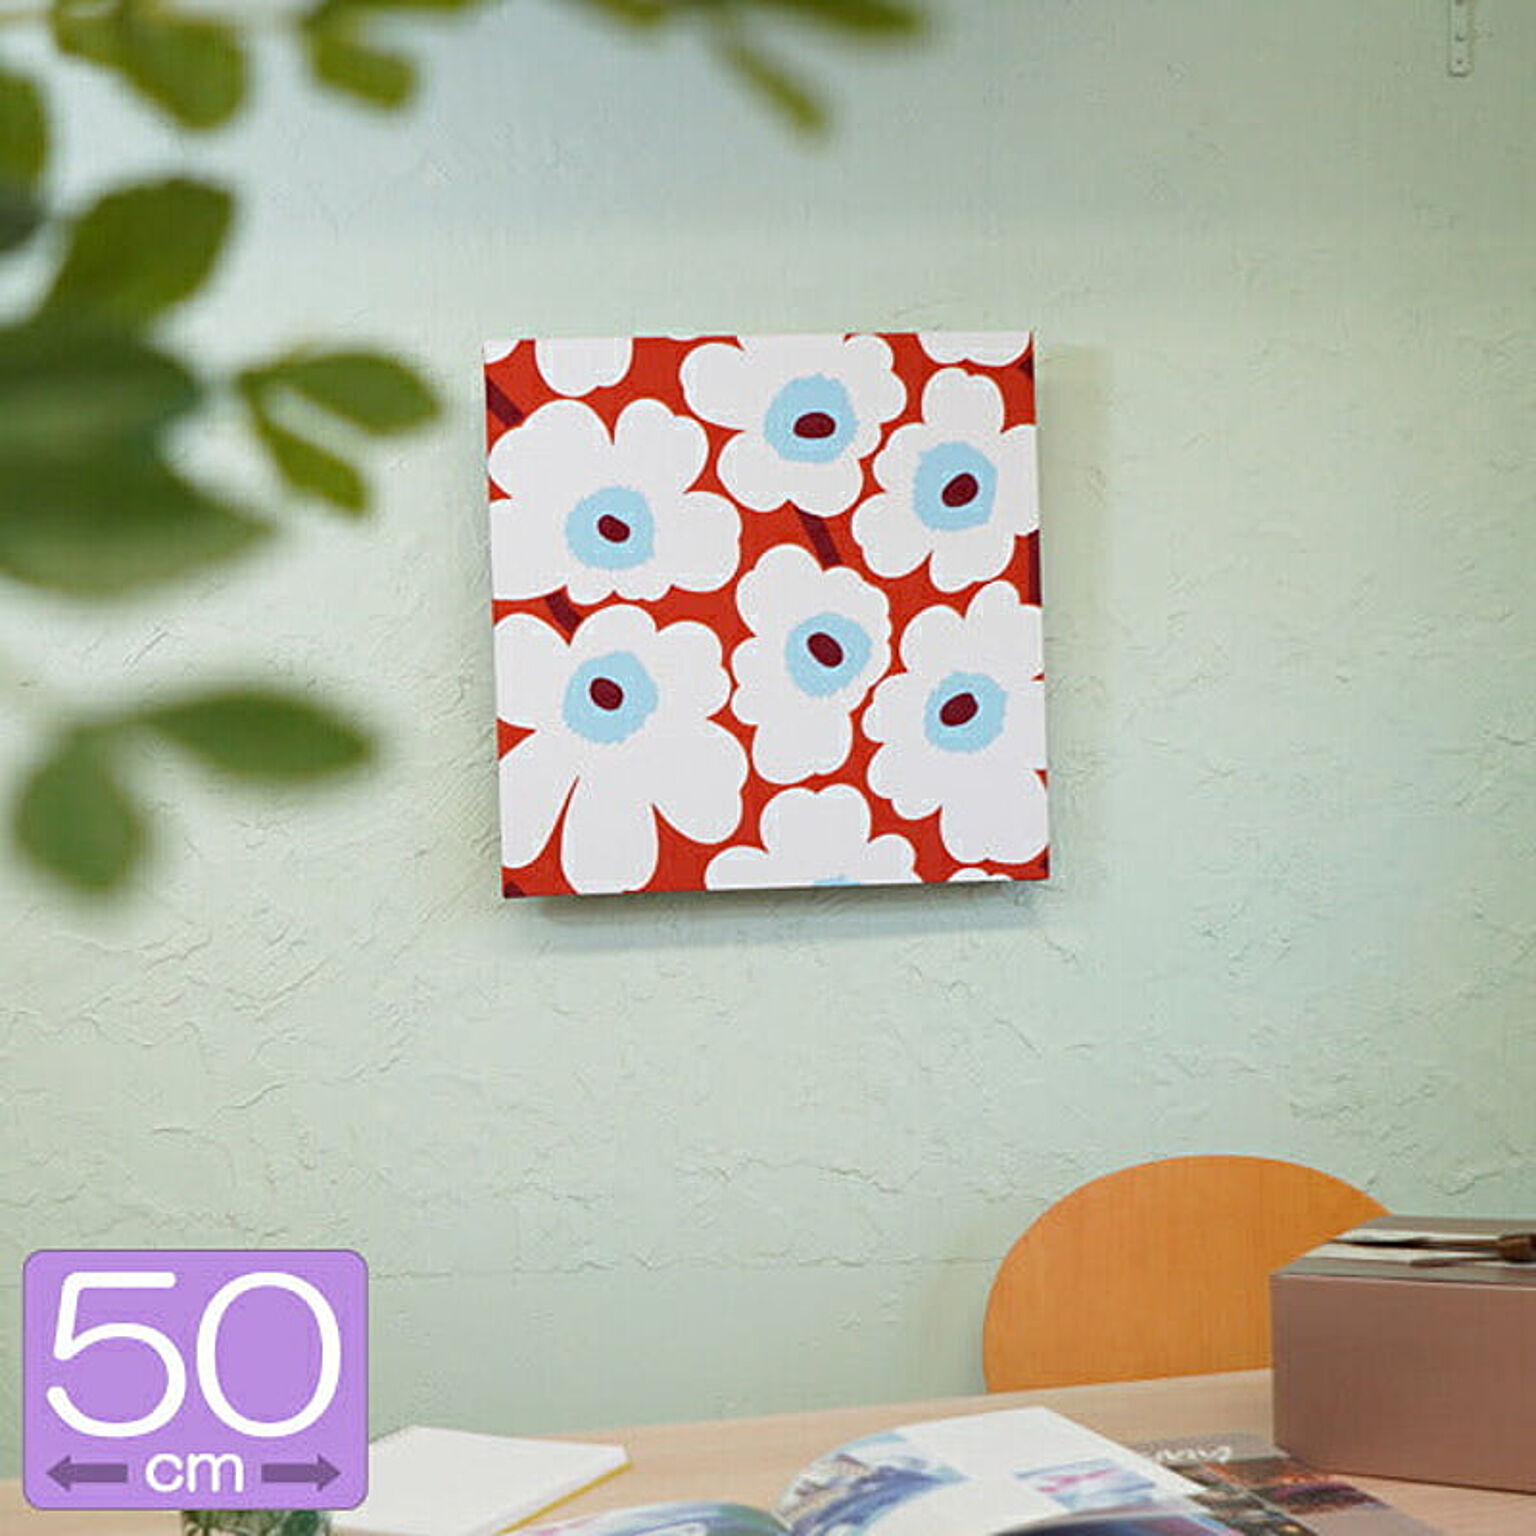 マリメッコ PIENI UNIKKO ファブリックパネル WHITE&CARDINAL RED 50×50cm